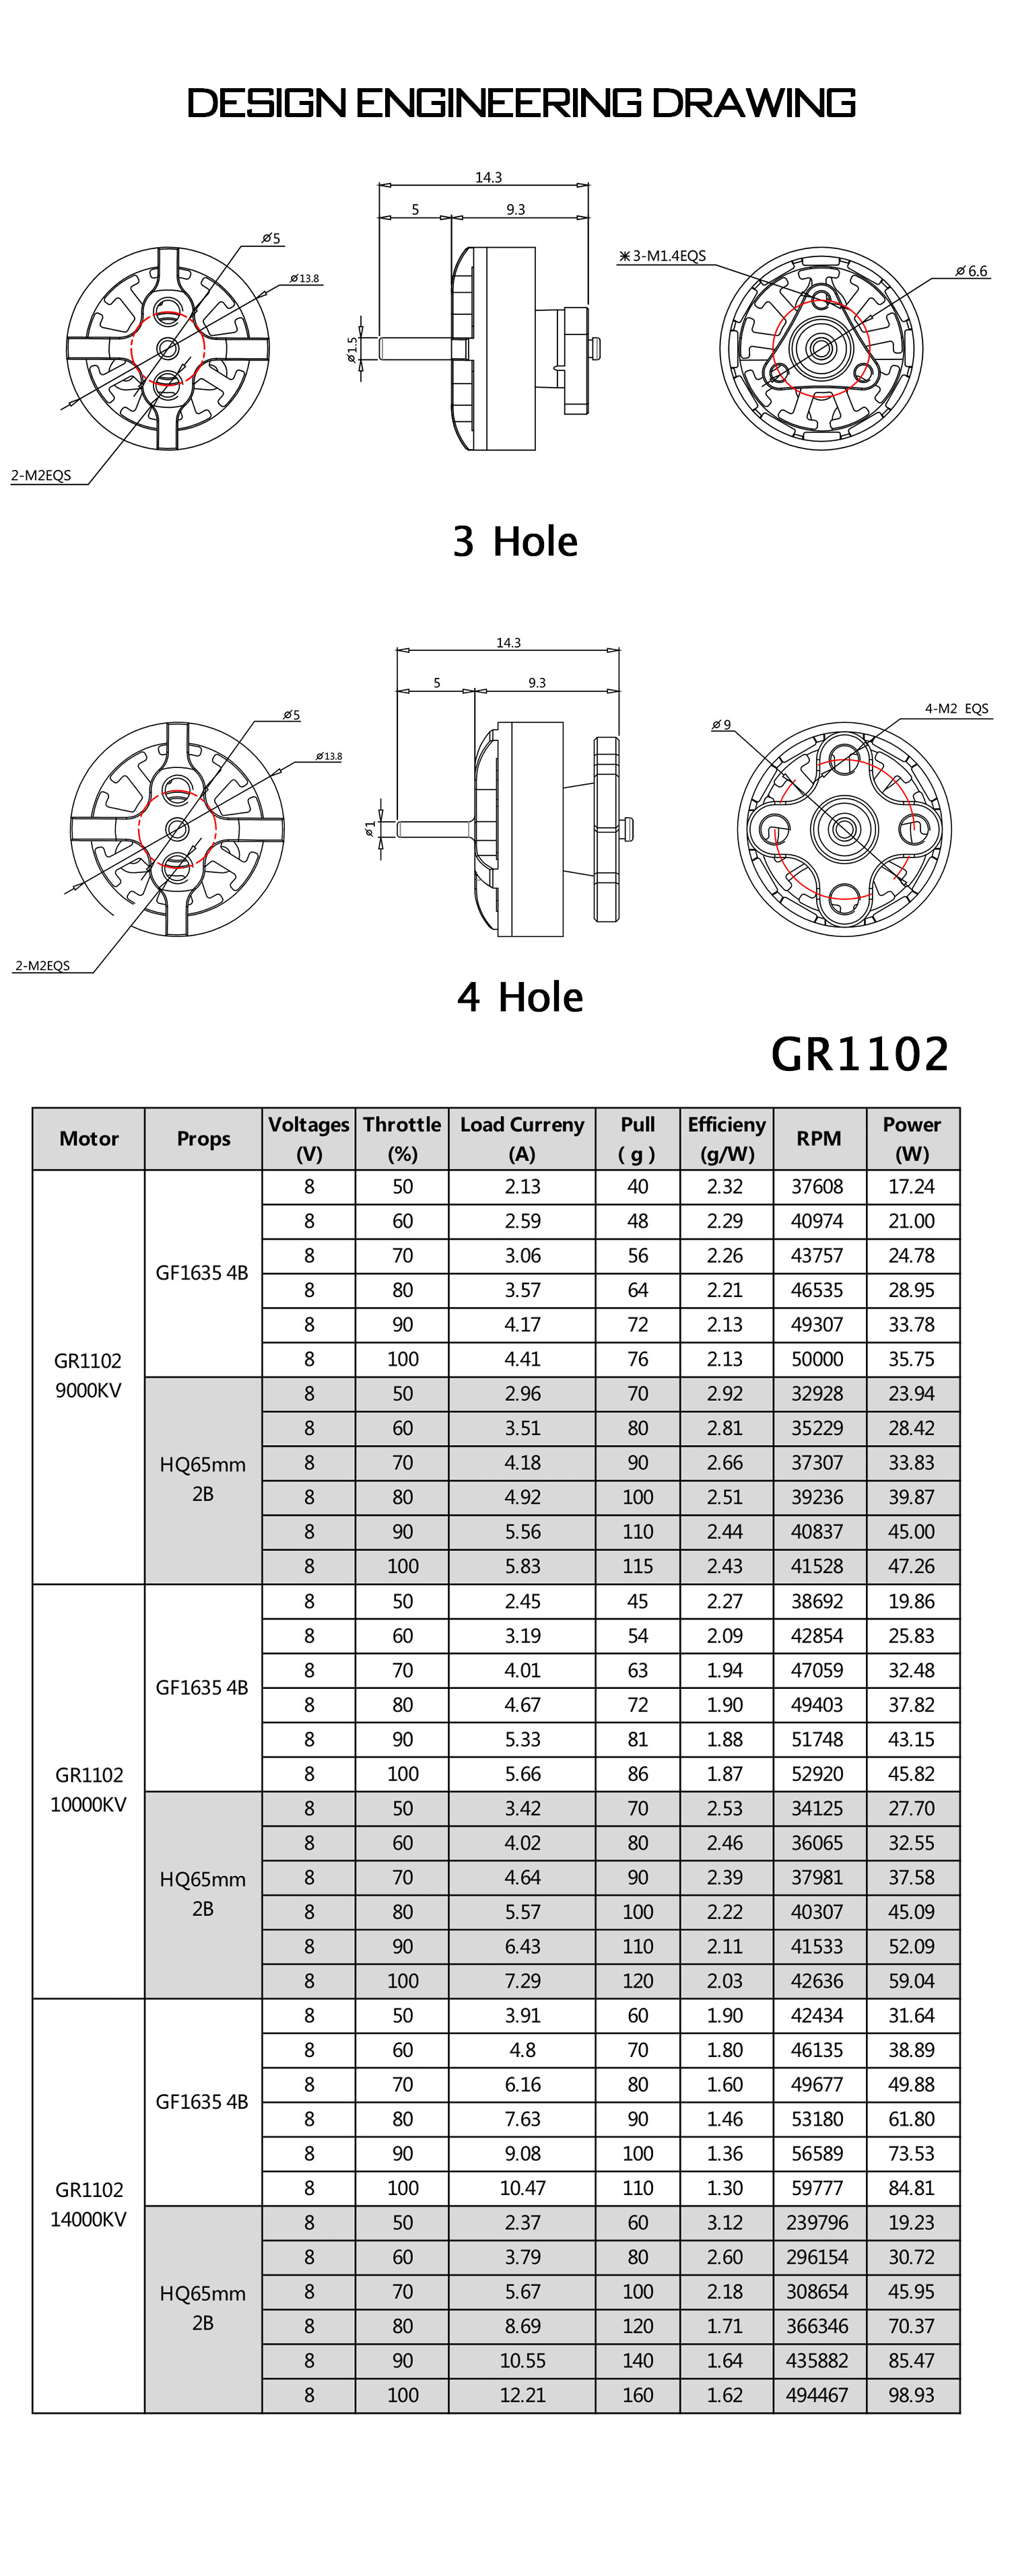 GEP-GR1102-10000kv 21-3S Brushless Motor